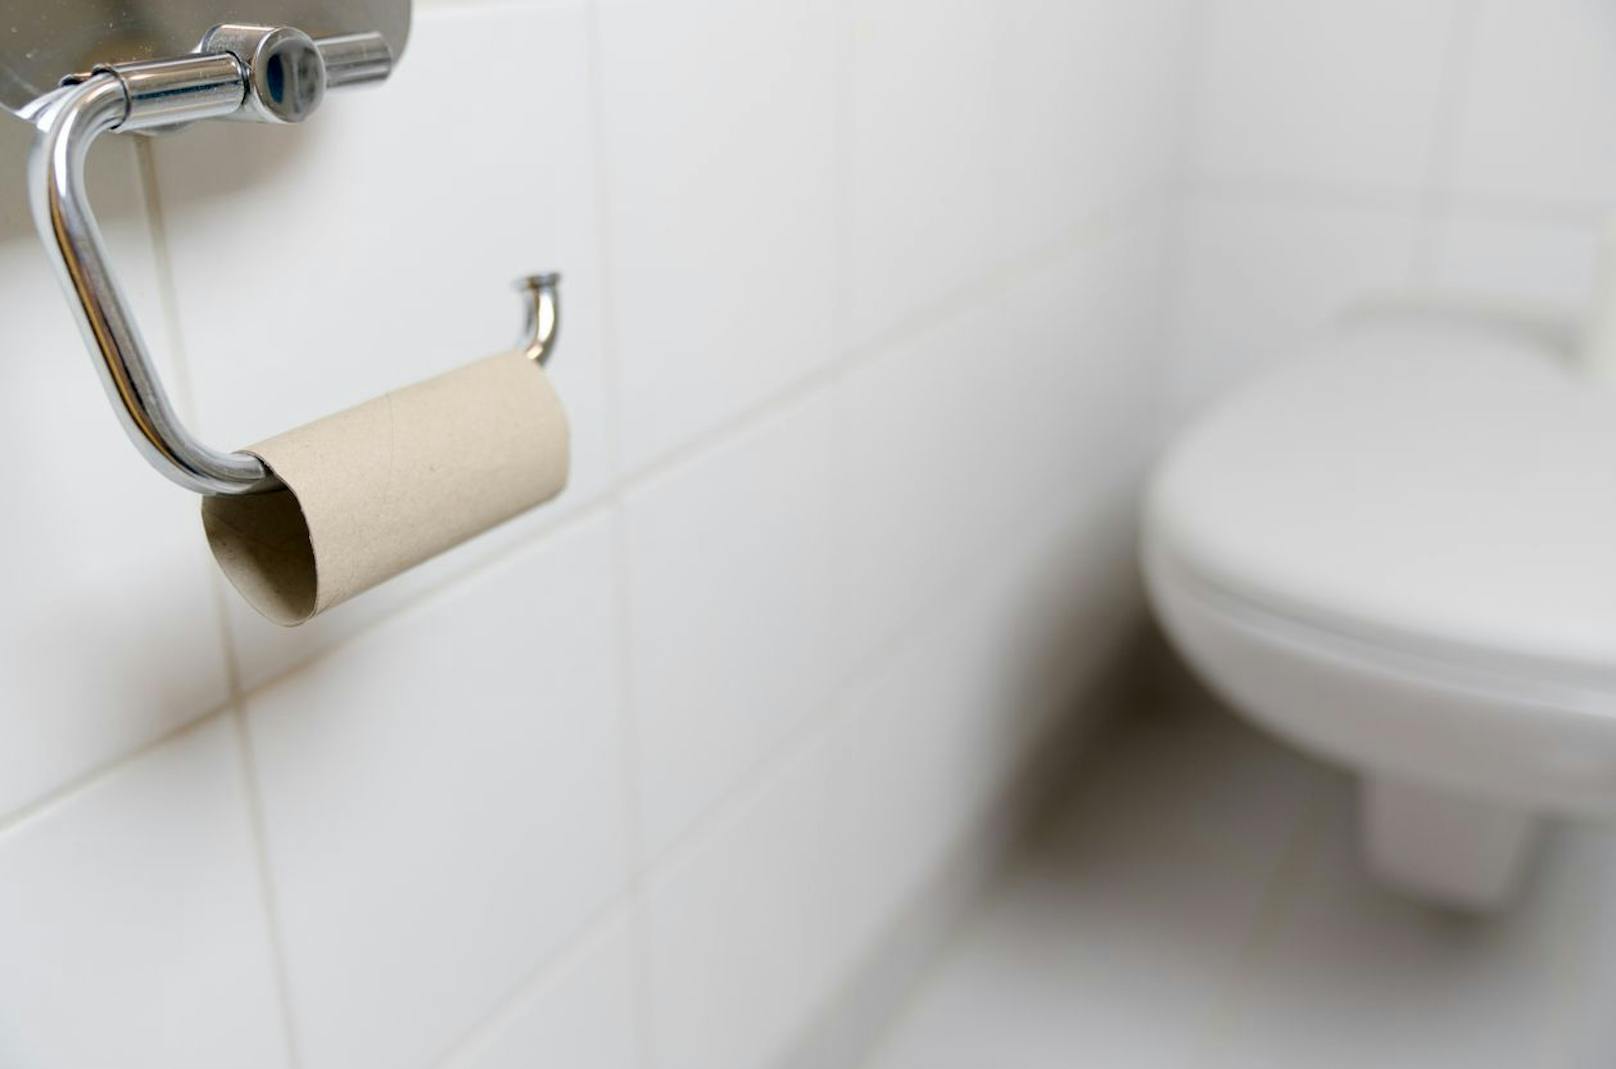 Für 88 Prozent der Frauen steht dagegen an oberster Stelle das Toilettenpapier, das nie ausgetauscht wird.